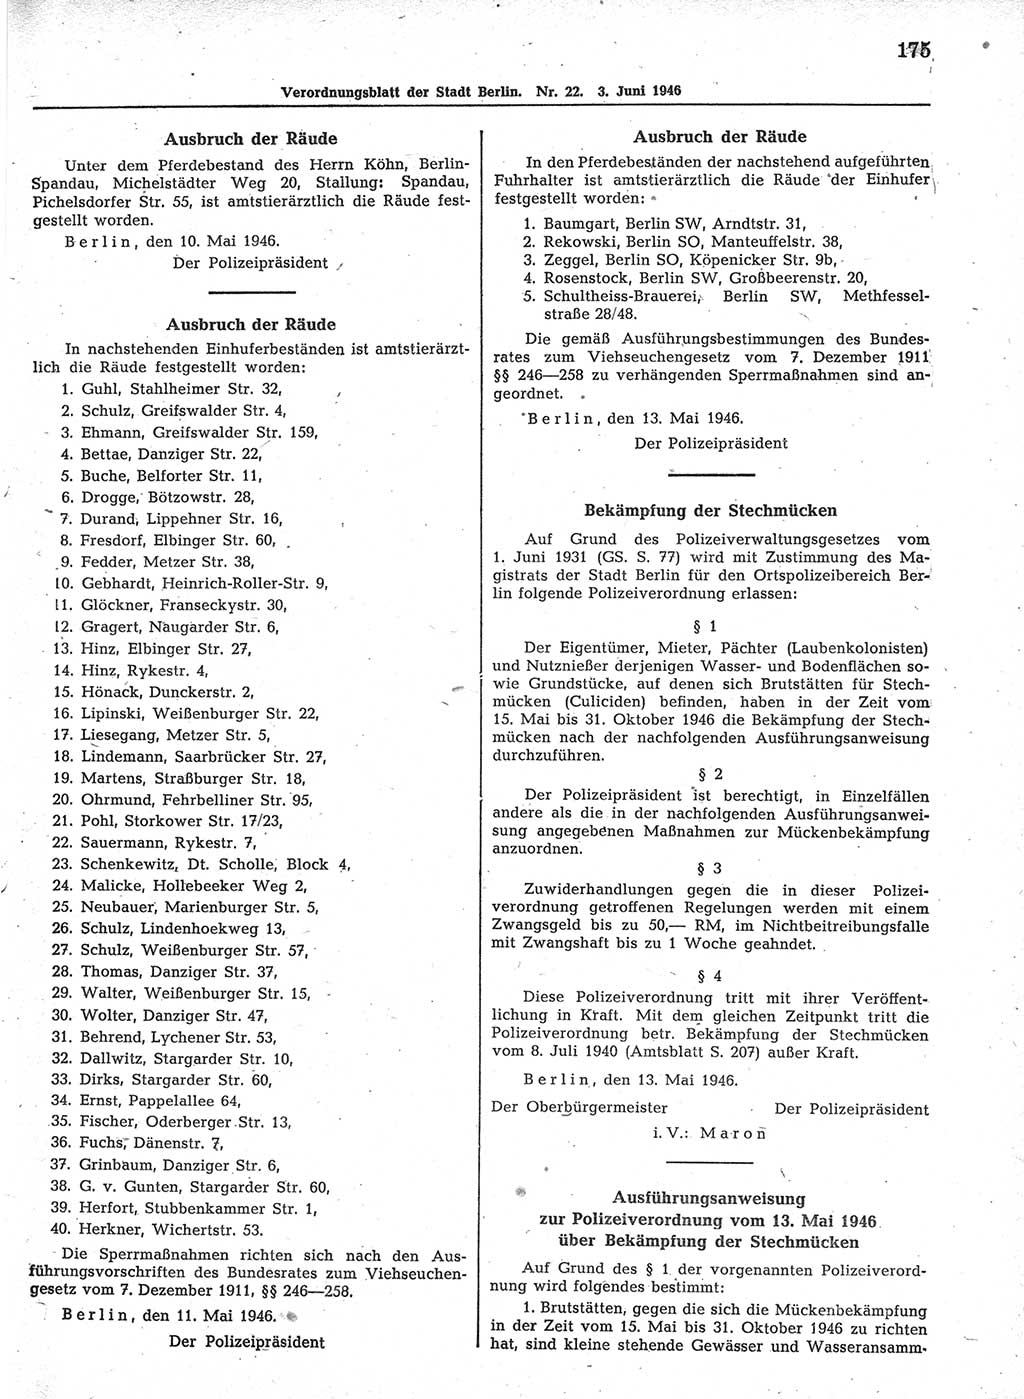 Verordnungsblatt (VOBl.) der Stadt Berlin, für Groß-Berlin 1946, Seite 175 (VOBl. Bln. 1946, S. 175)